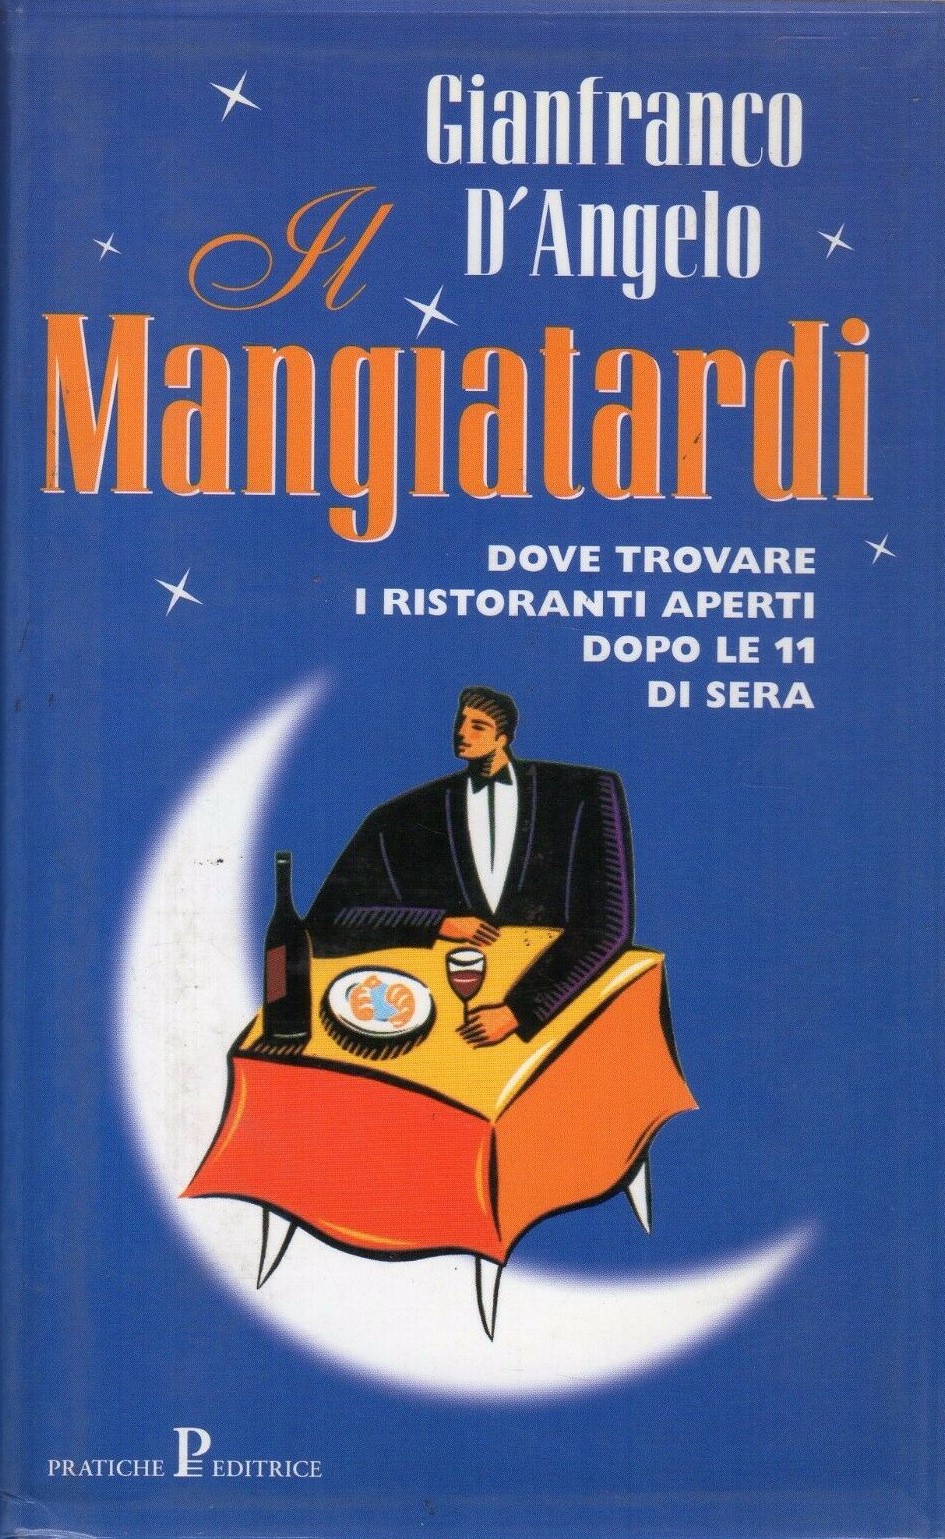 “Il mangiatardi: dove trovare i ristoranti aperti dopo le 11 di sera”: il libro cult di Gianfranco D’Angelo